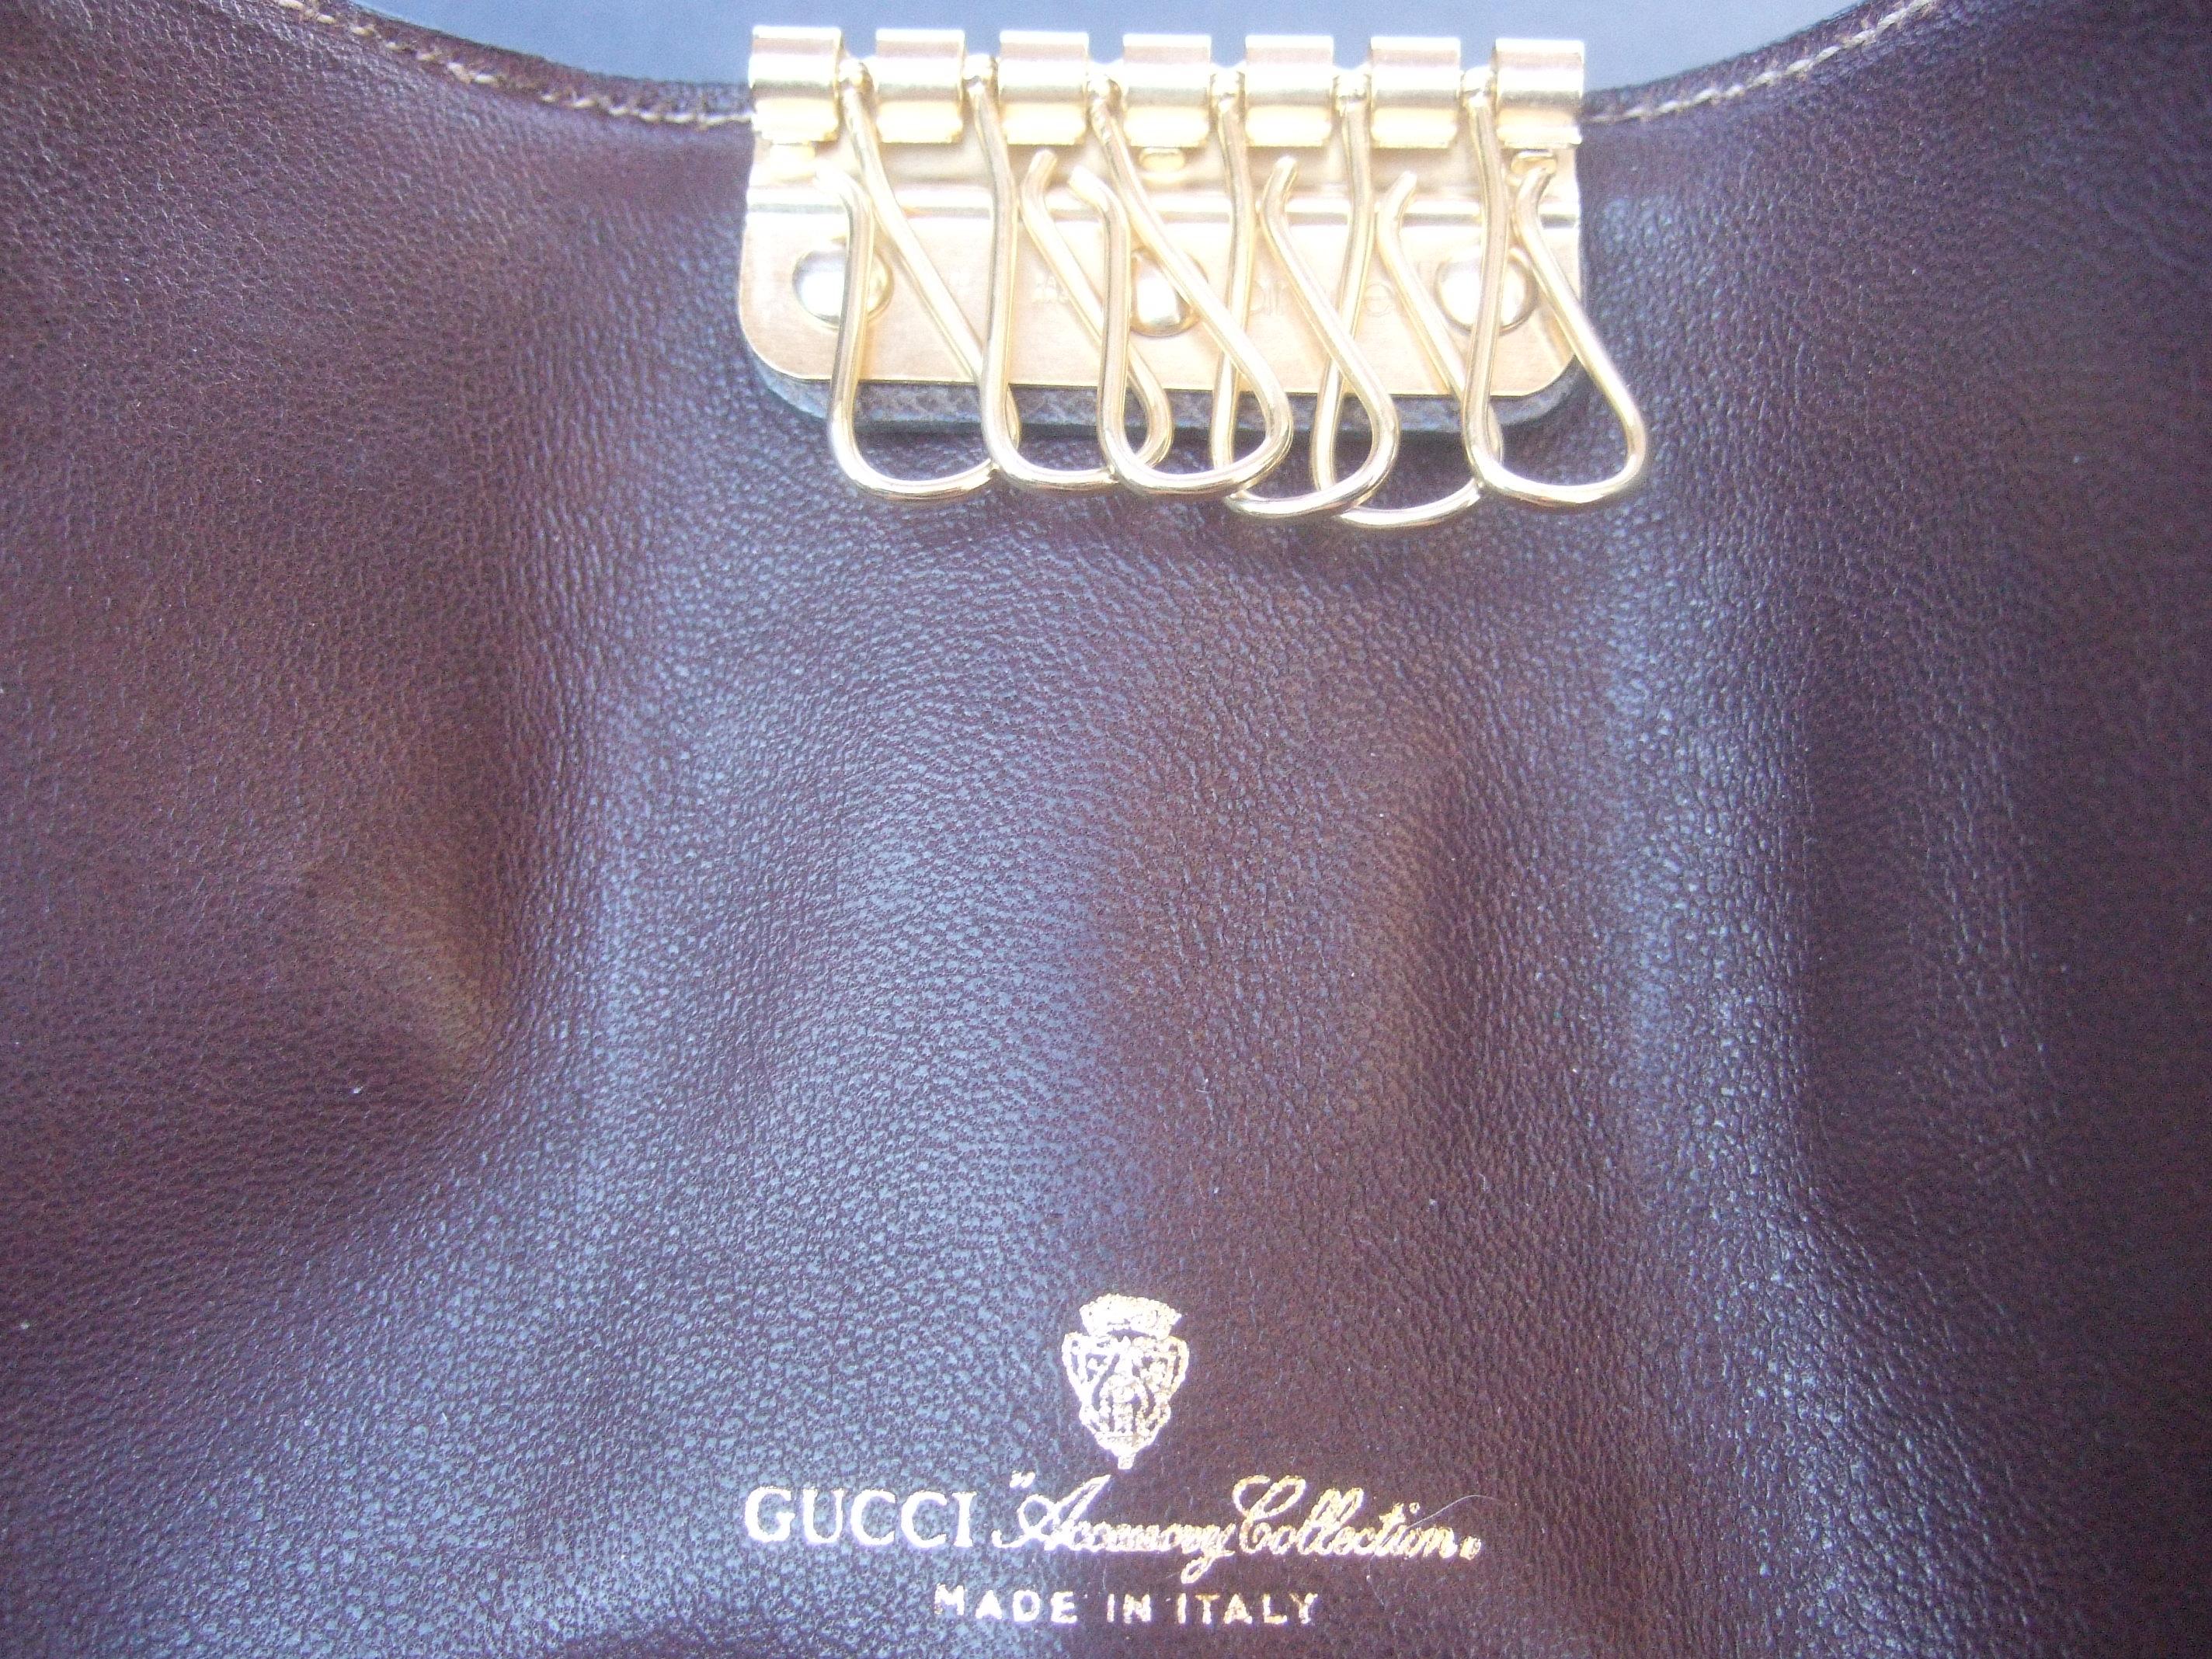 Gucci Vintage Key Chain Case in Gucci Presentation Box c 1980s 5